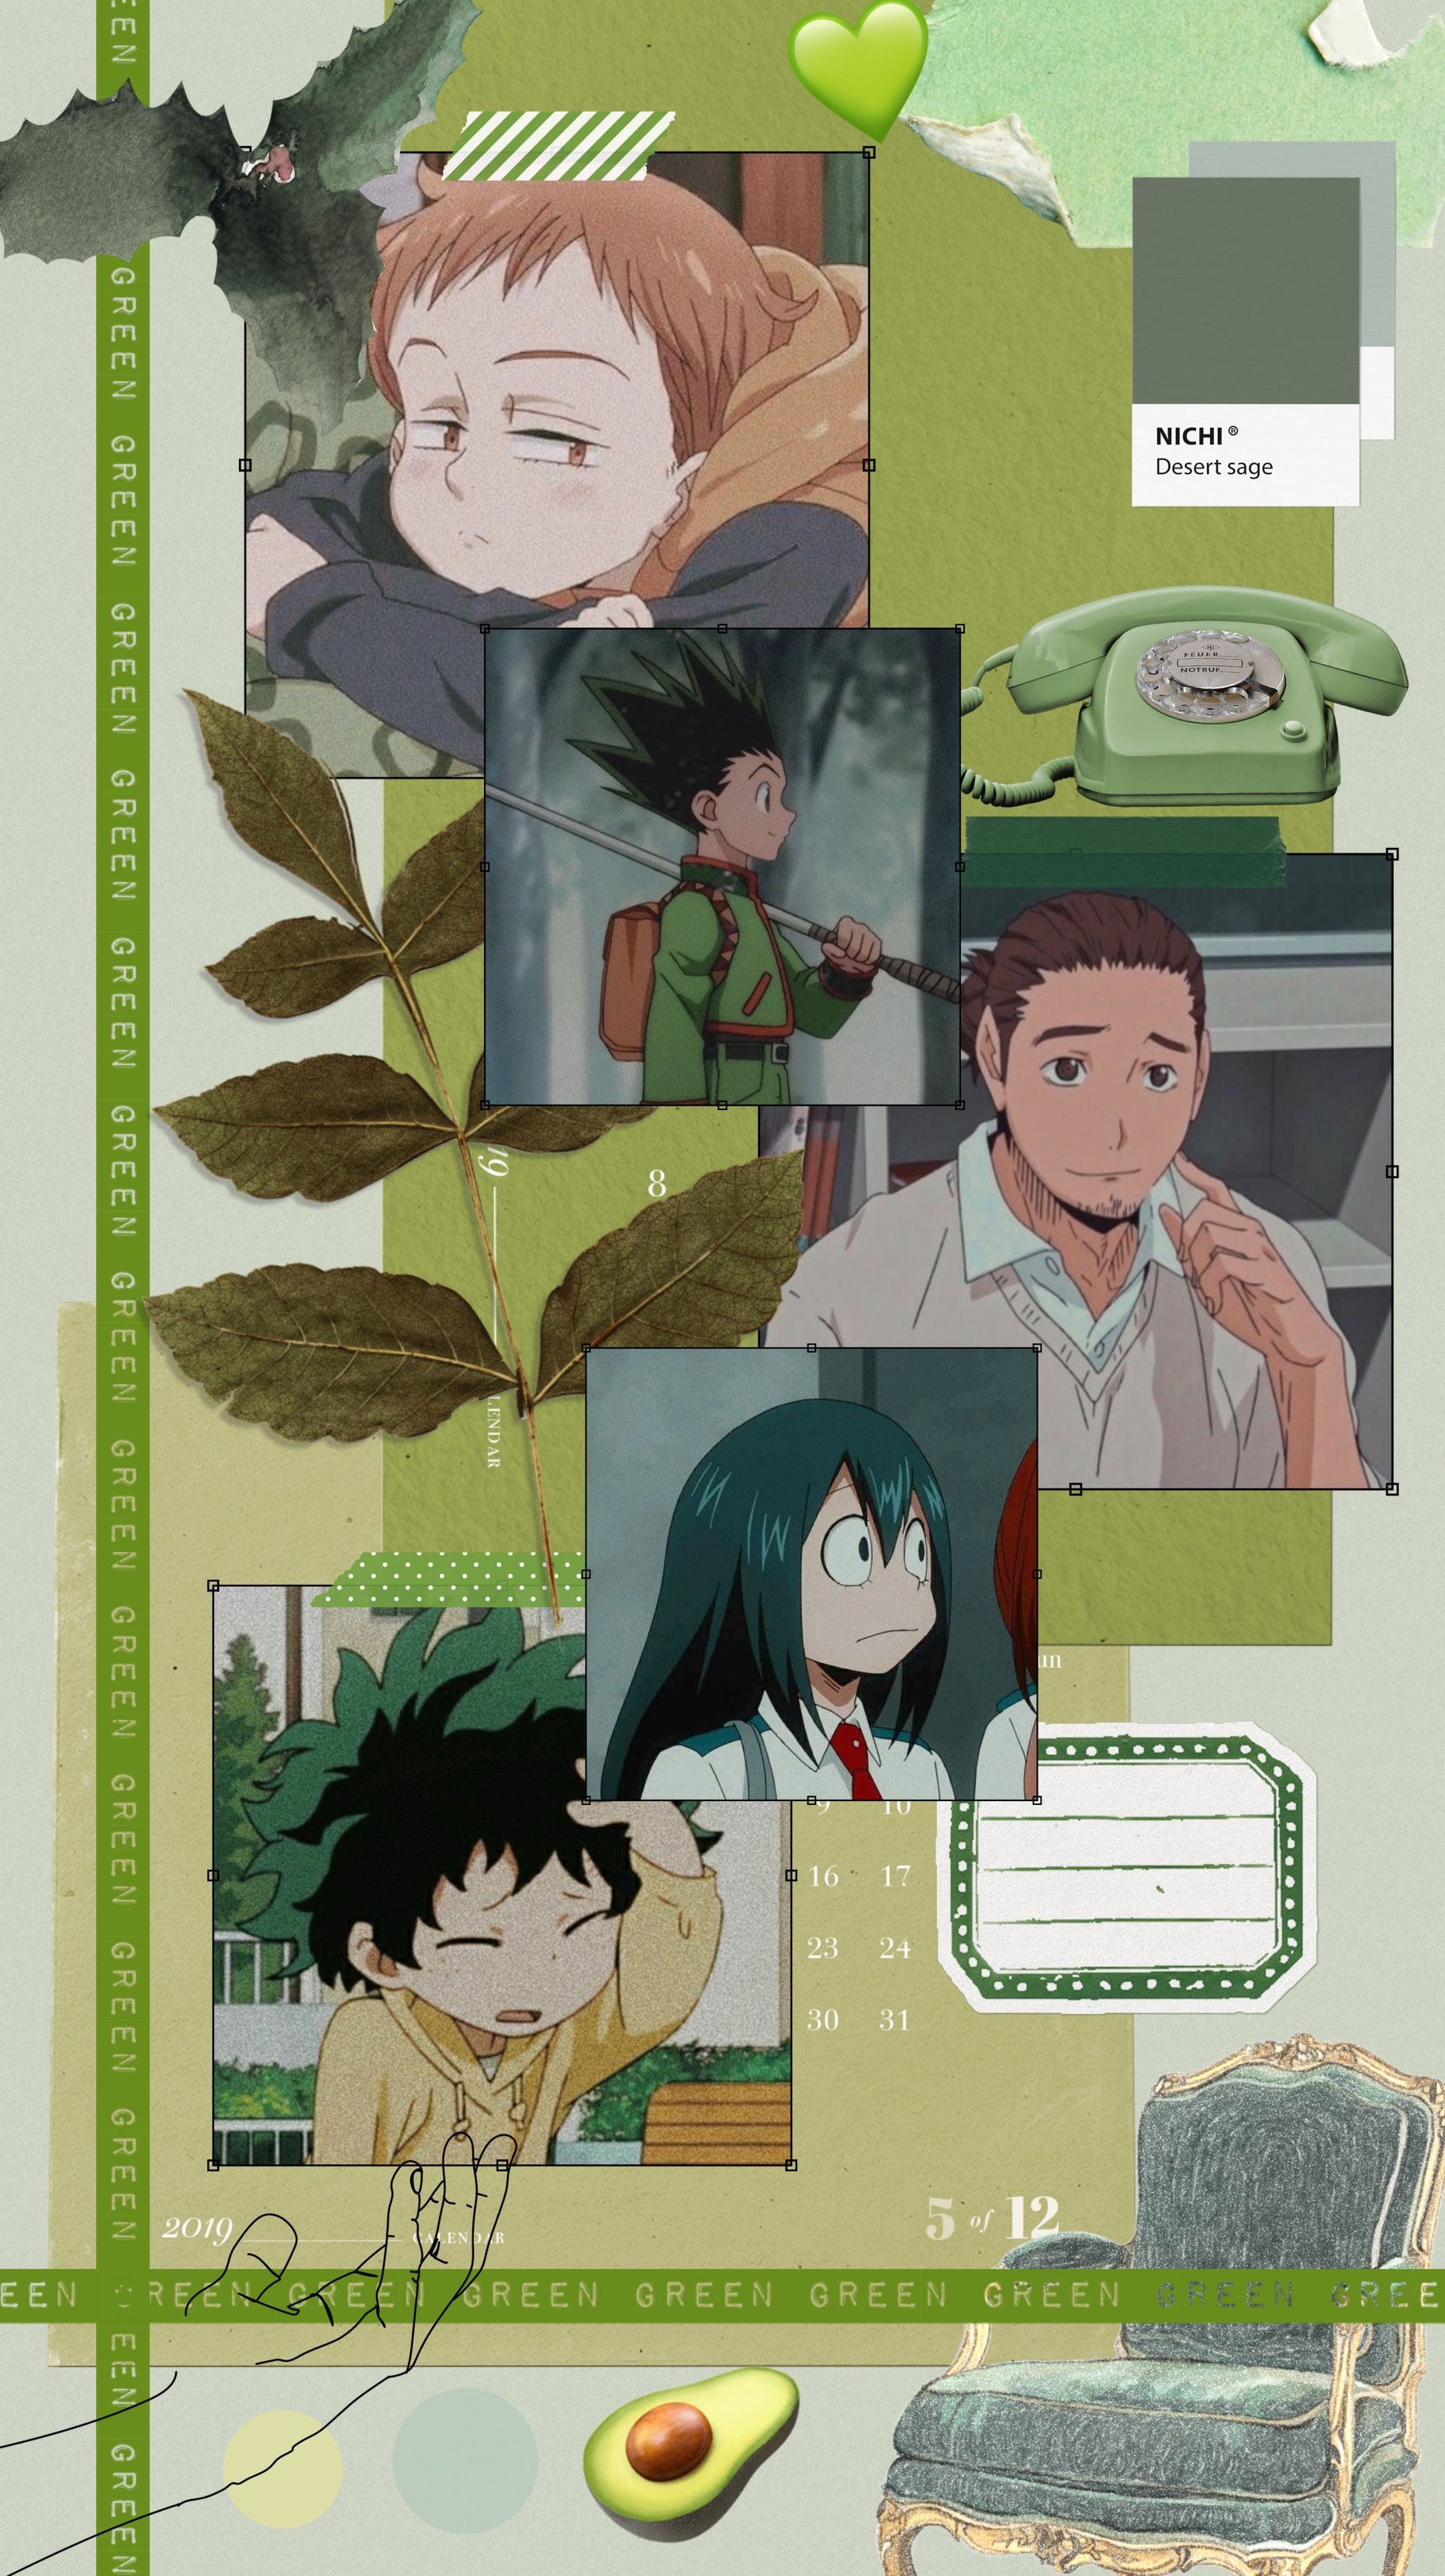 Green Anime Aesthetic Wallpaper Free Green Anime Aesthetic Background